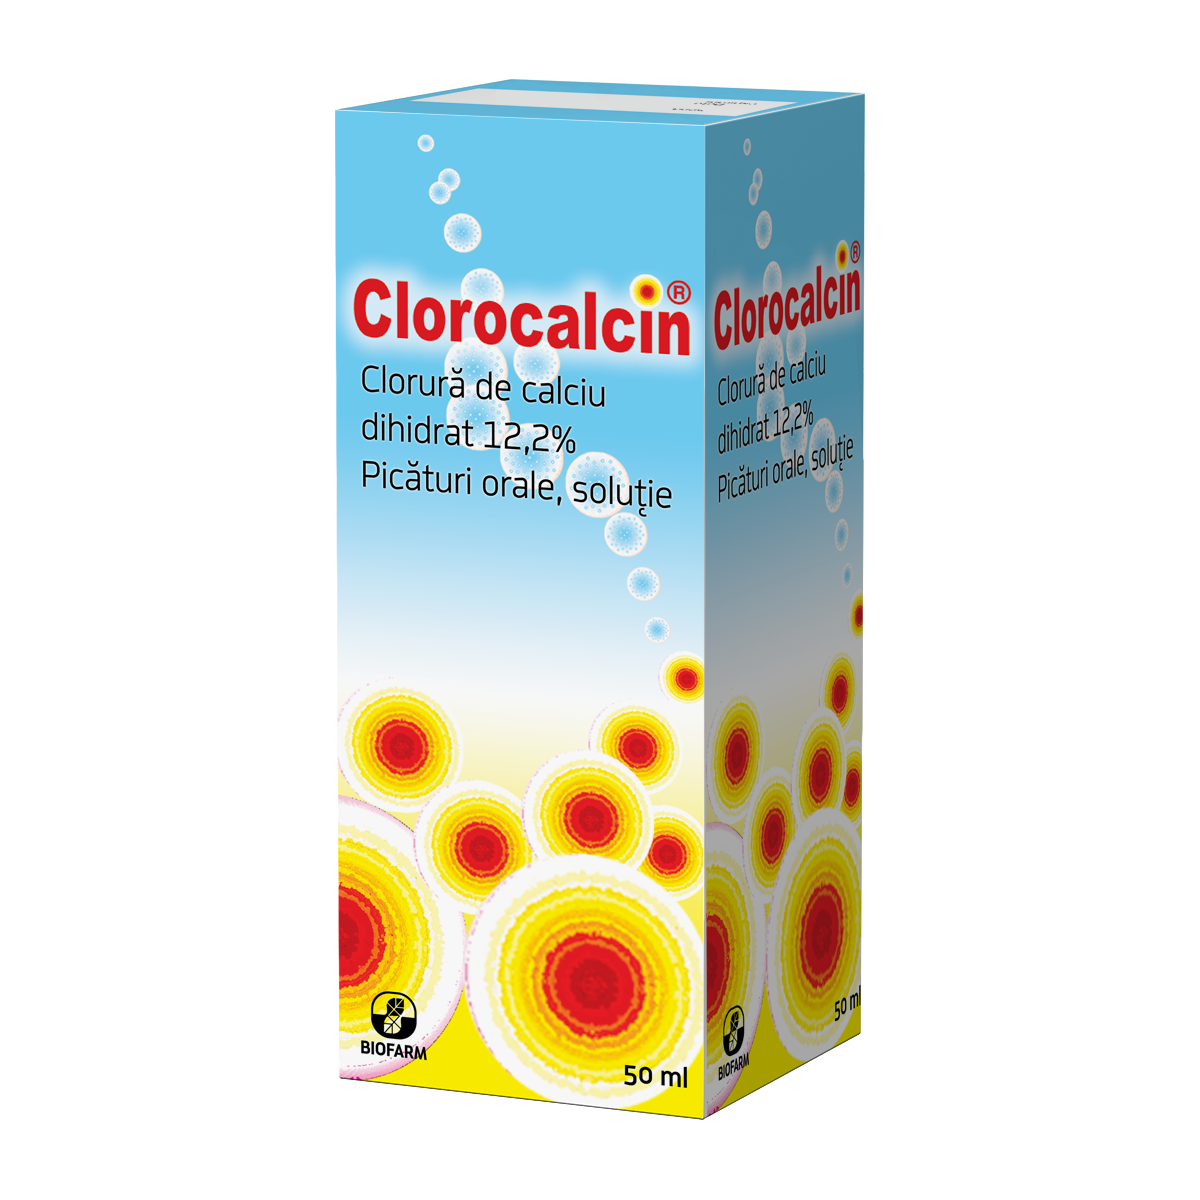 Articulatii si sistem osos - Clorocalcin, 50 ml, Biofarm, sinapis.ro